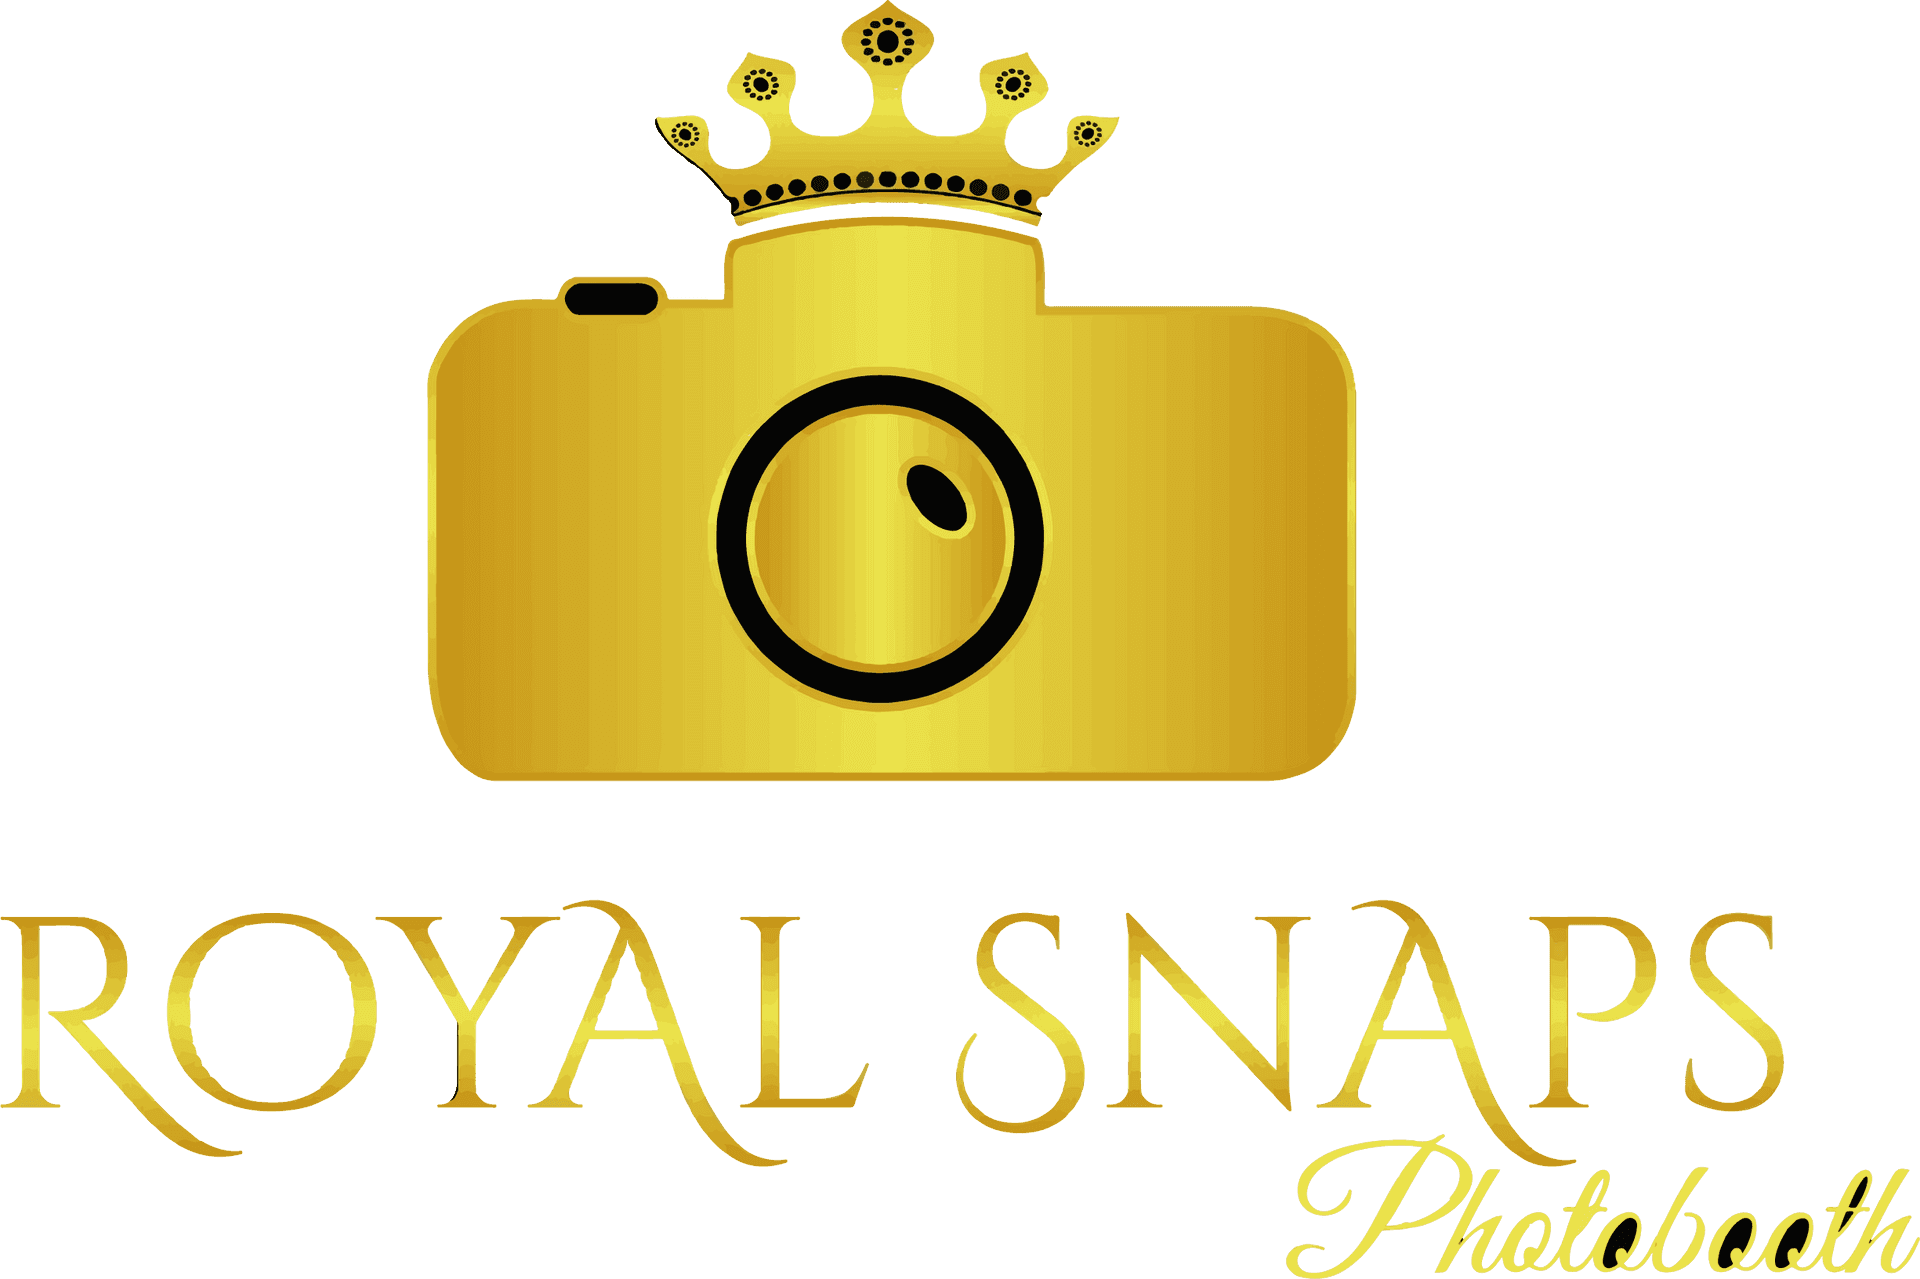 Royal Snaps Photobooth Logo PNG